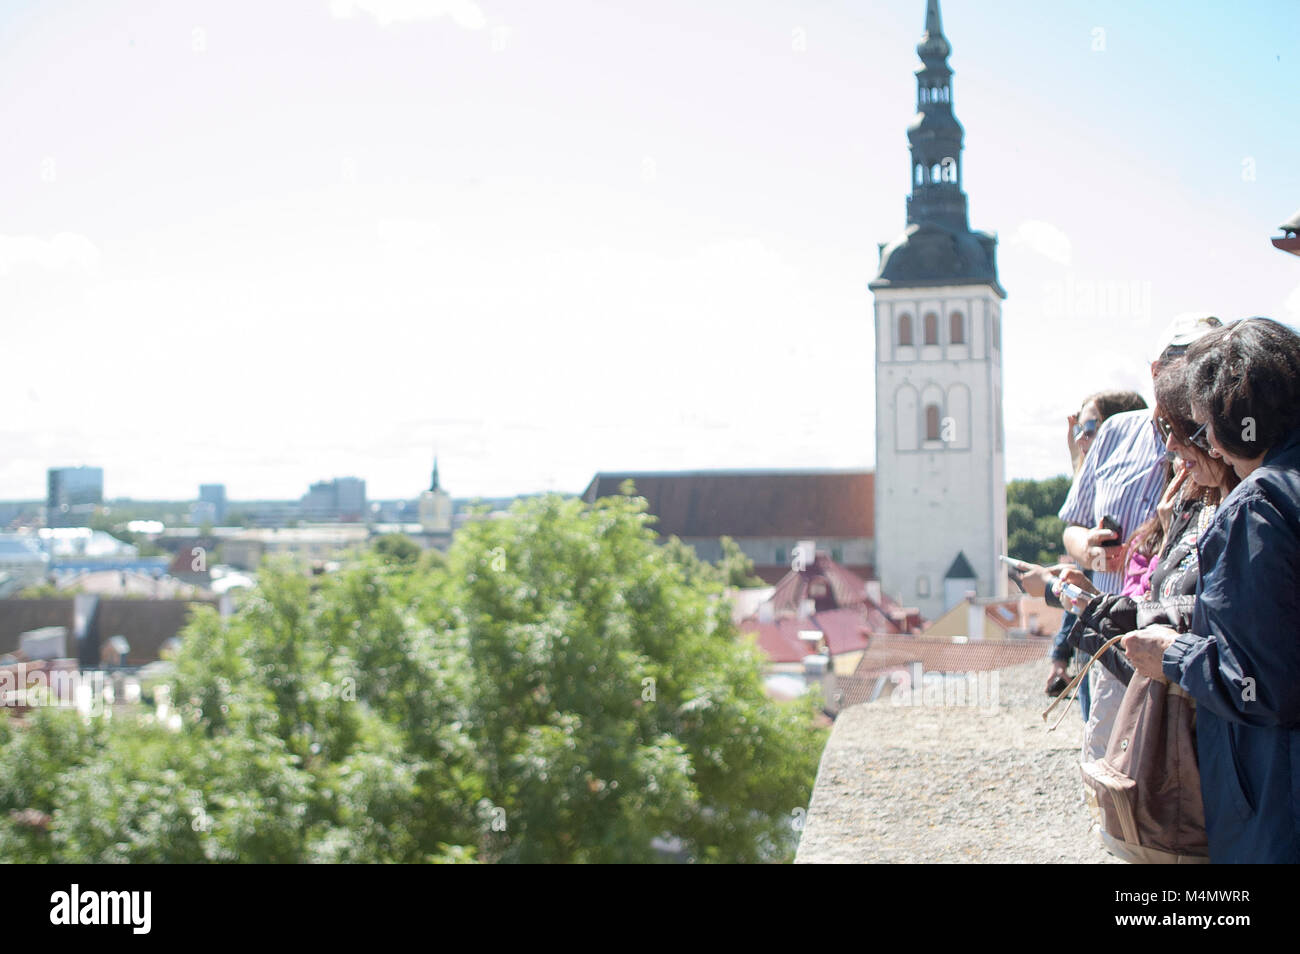 Tourists at scenic overlook Tallinn Estonia Stock Photo